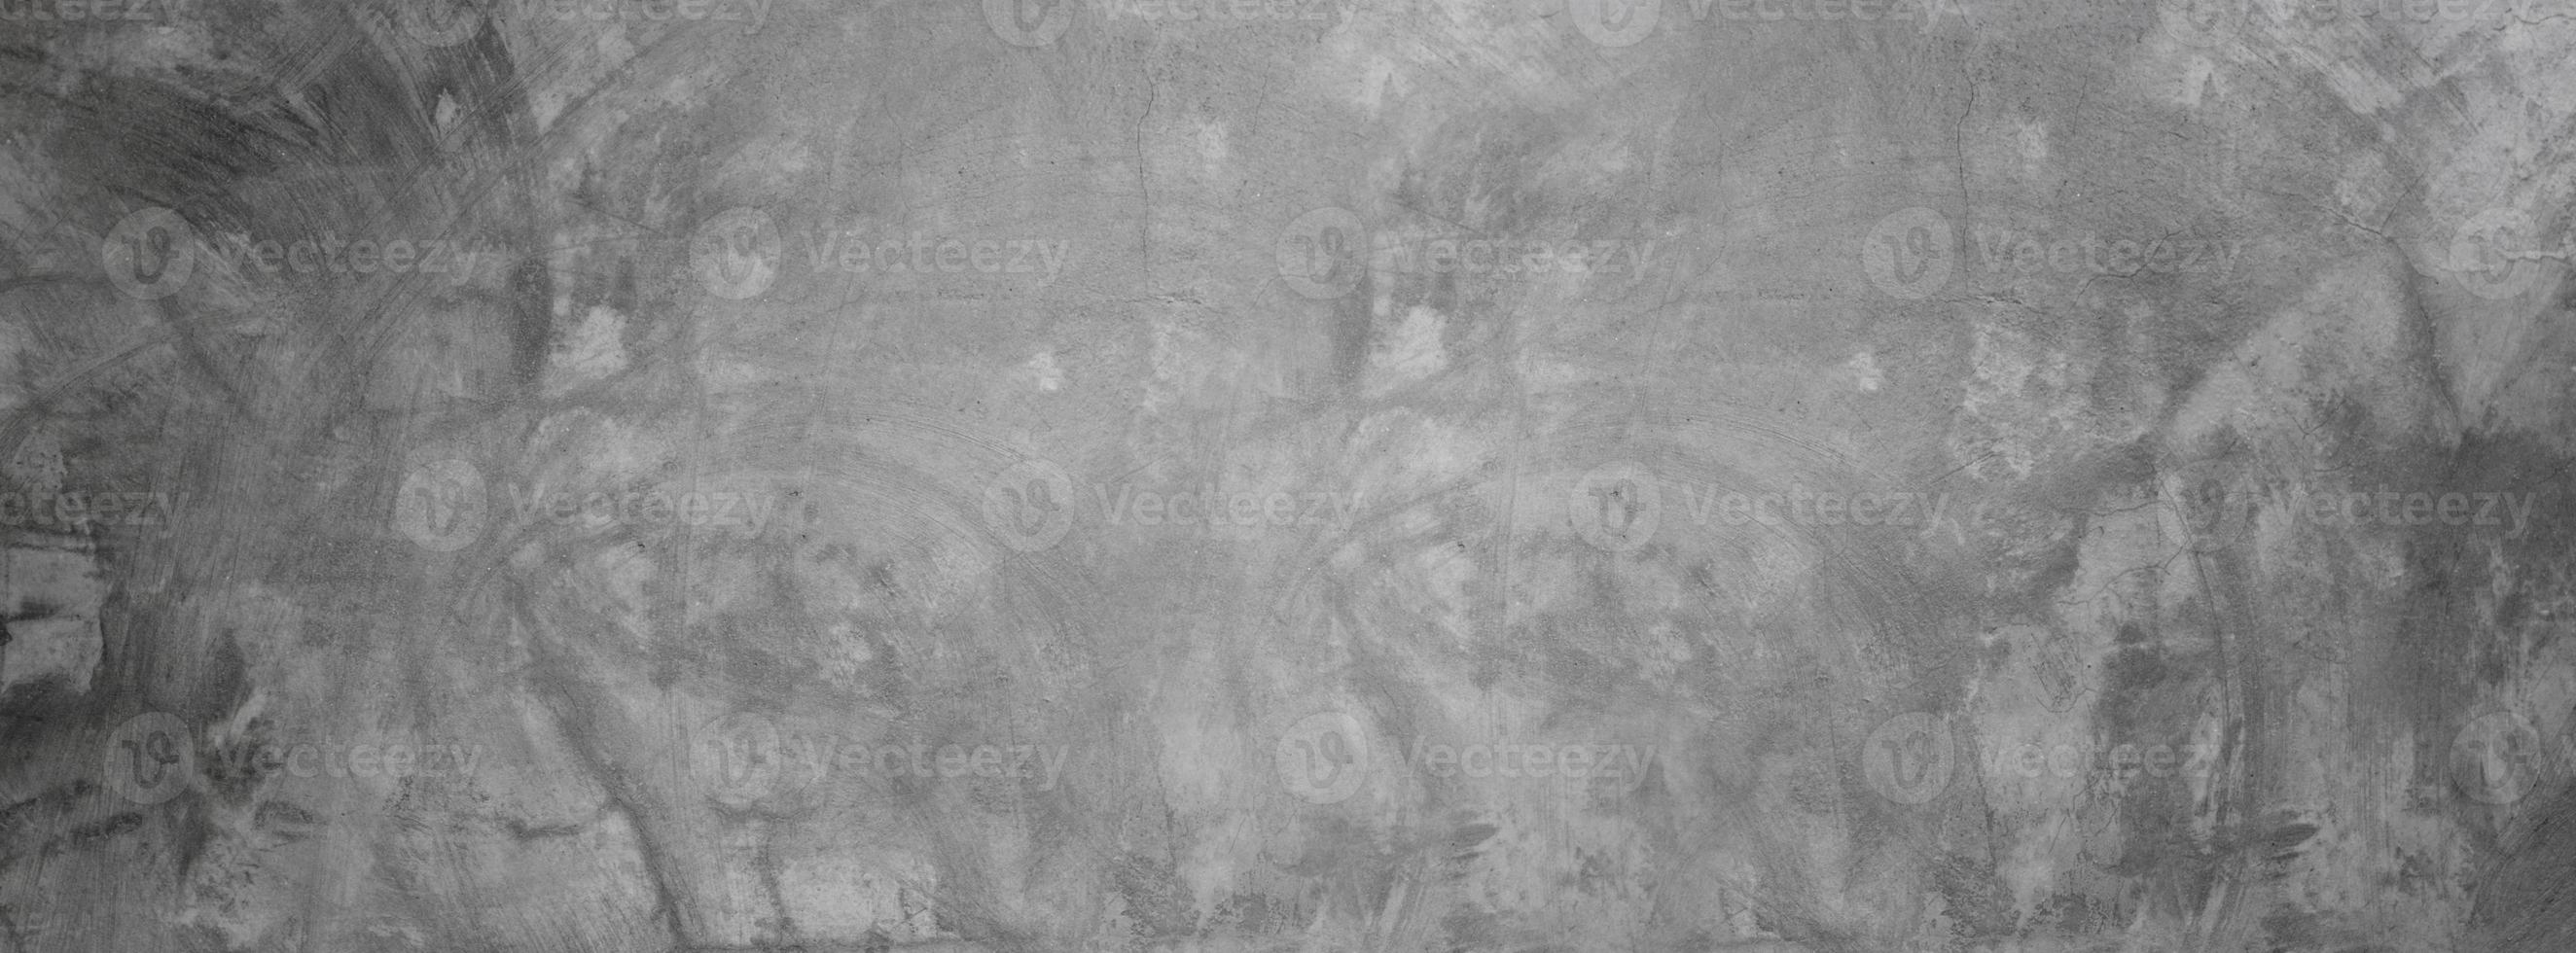 grungy Zement Textur Wand, grauer Beton Banner Hintergrund für Hintergrund foto